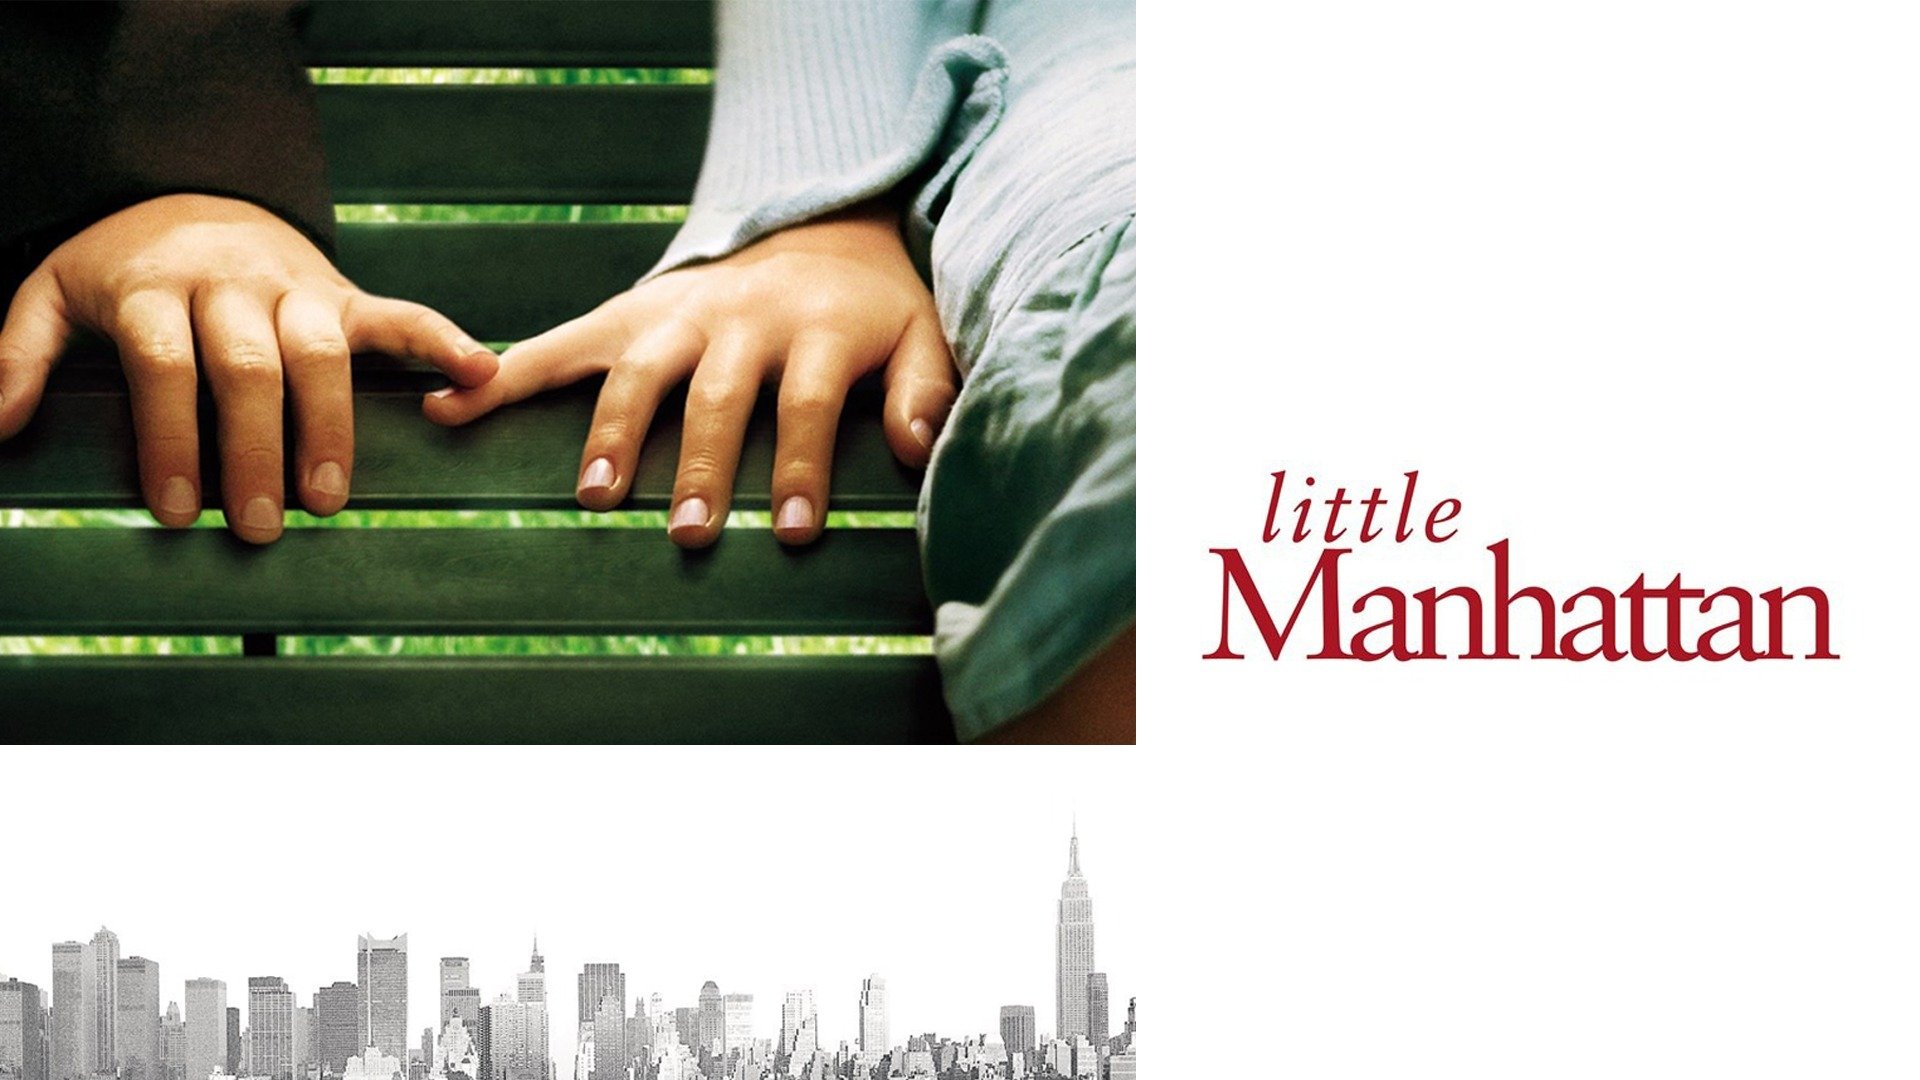 becky bigner recommends Little Manhattan Full Movie